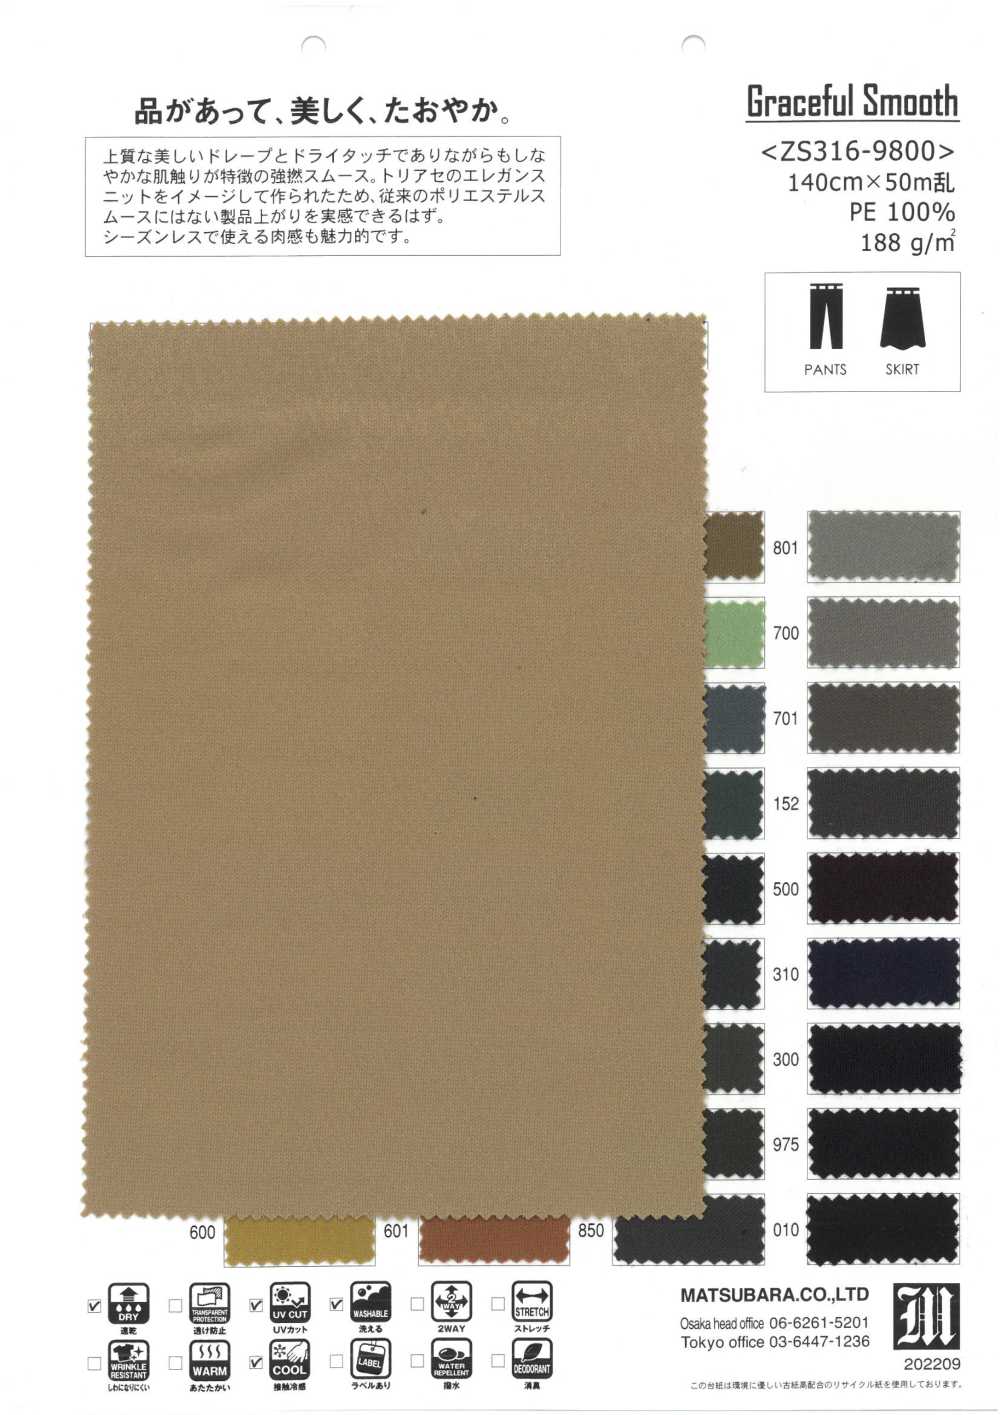 ZS316-9800 Gracioso Suave[Têxtil / Tecido] Matsubara